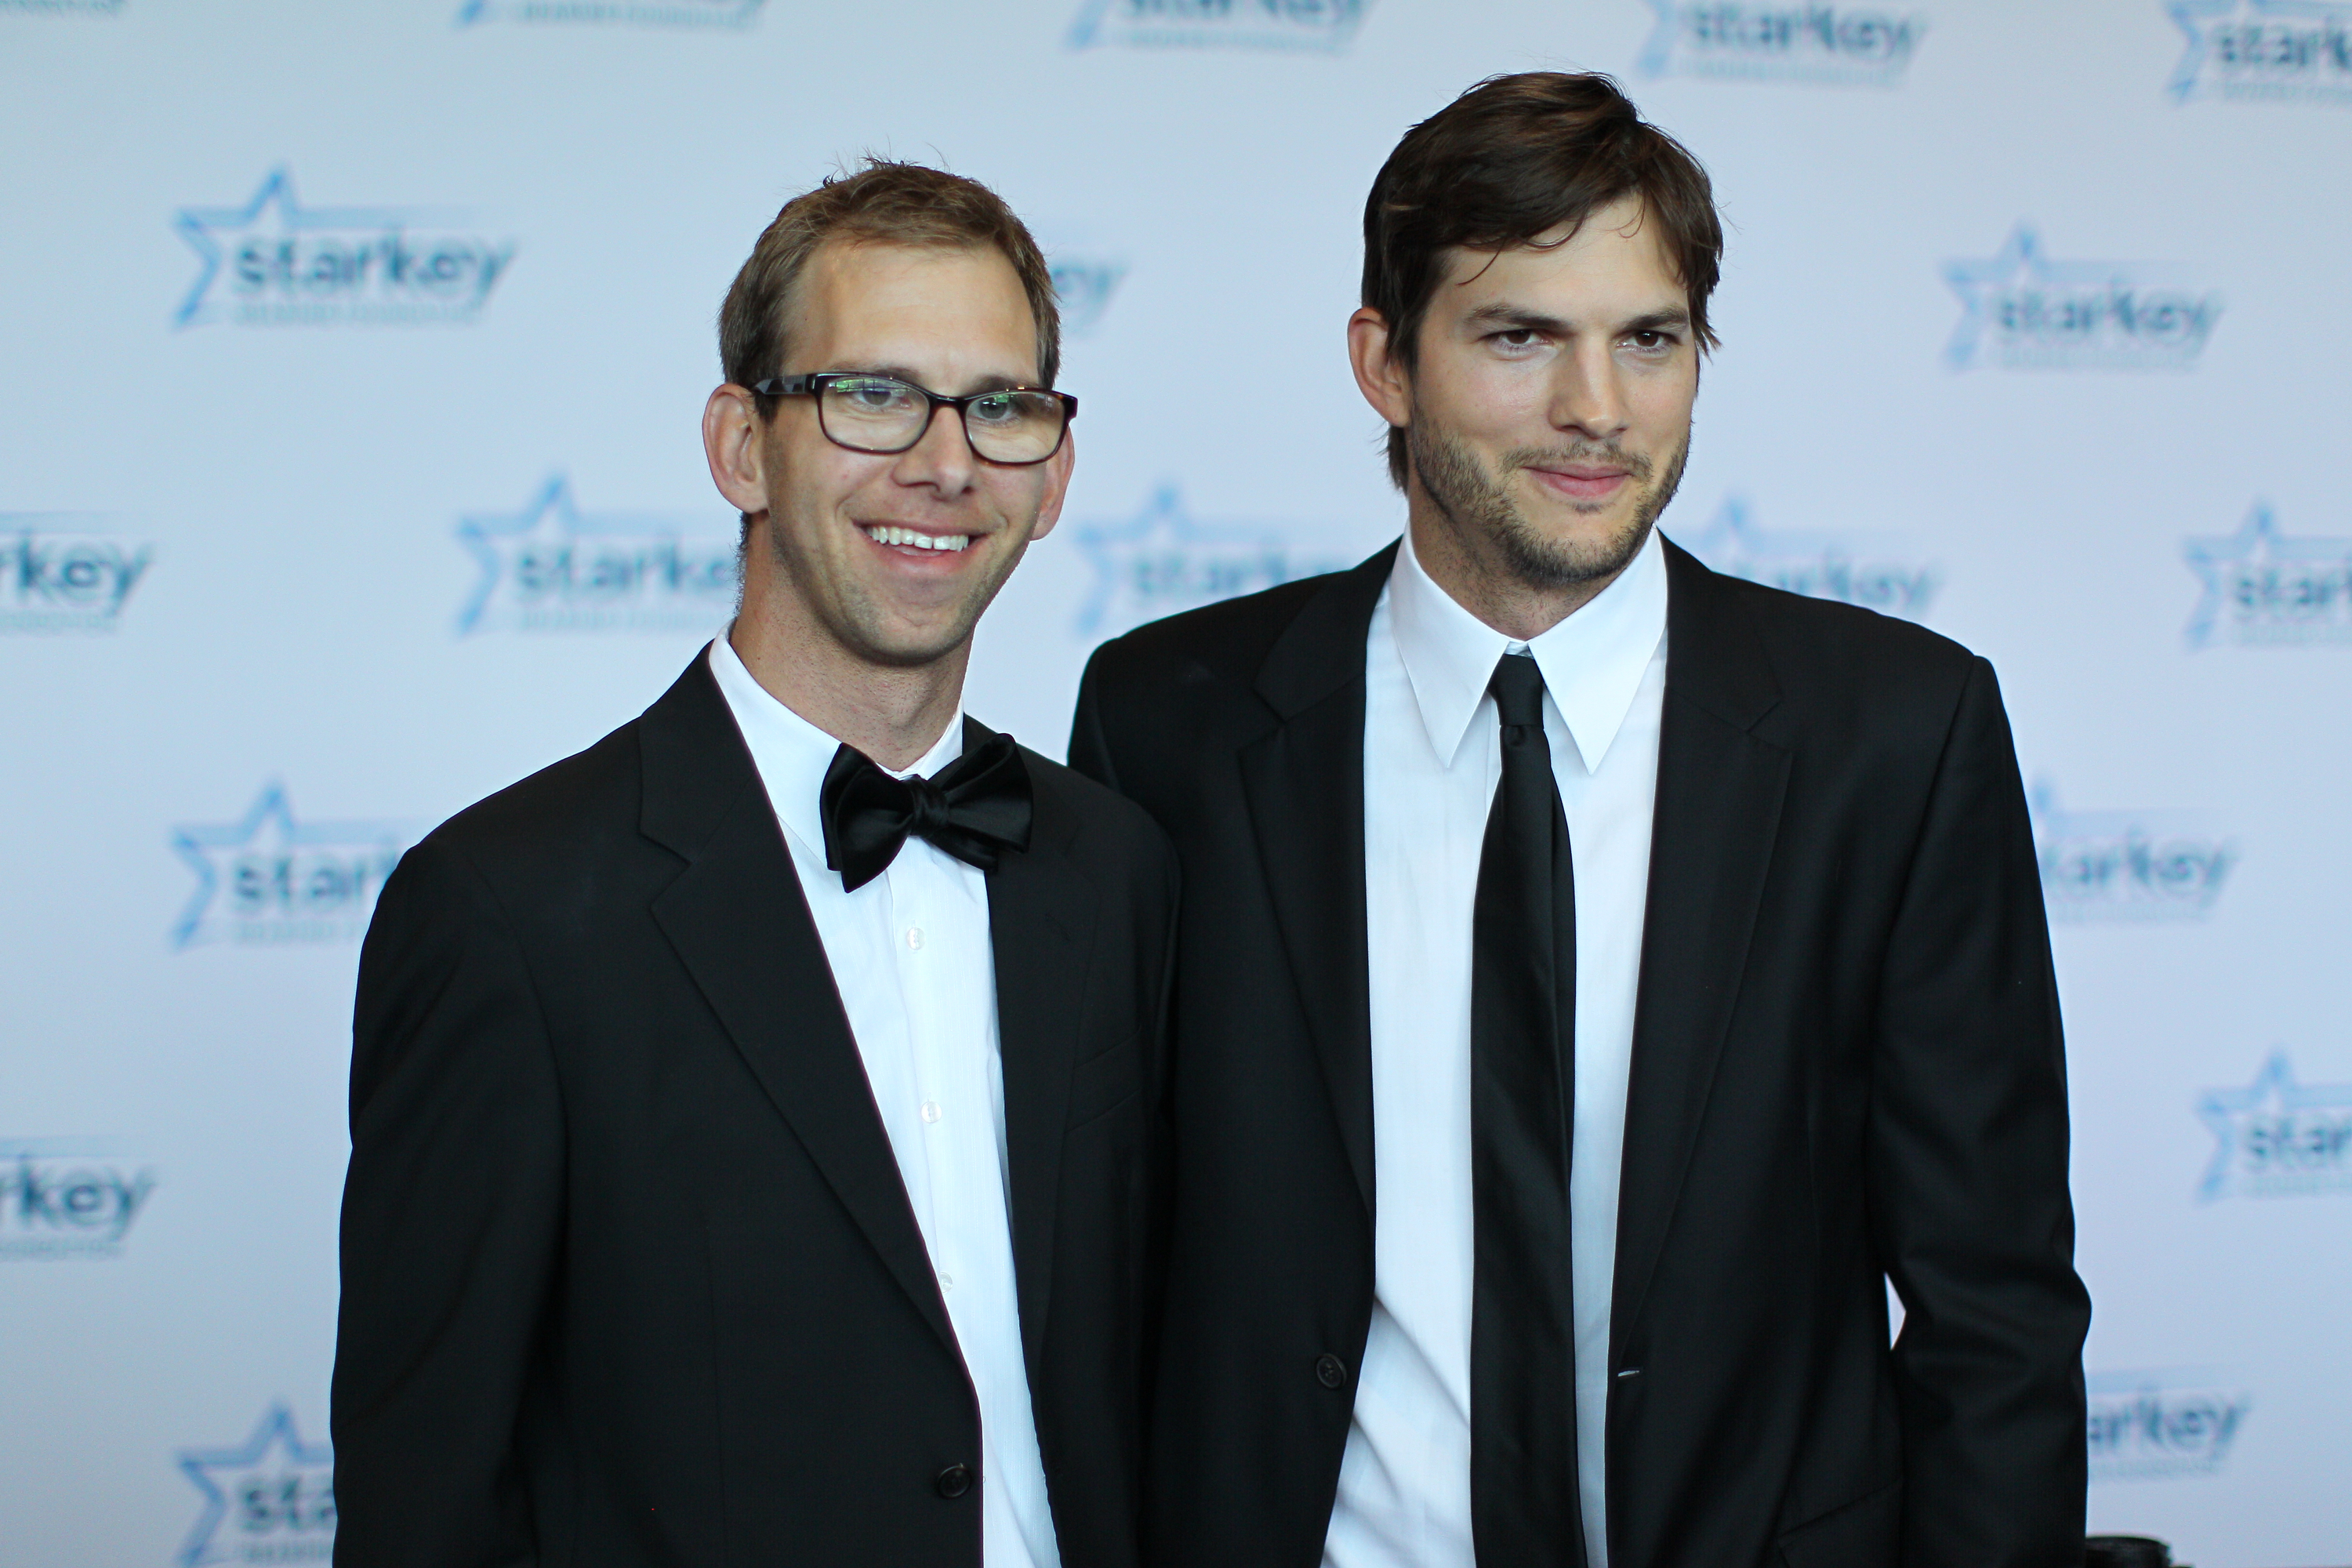 Michael and Ashton Kutcher